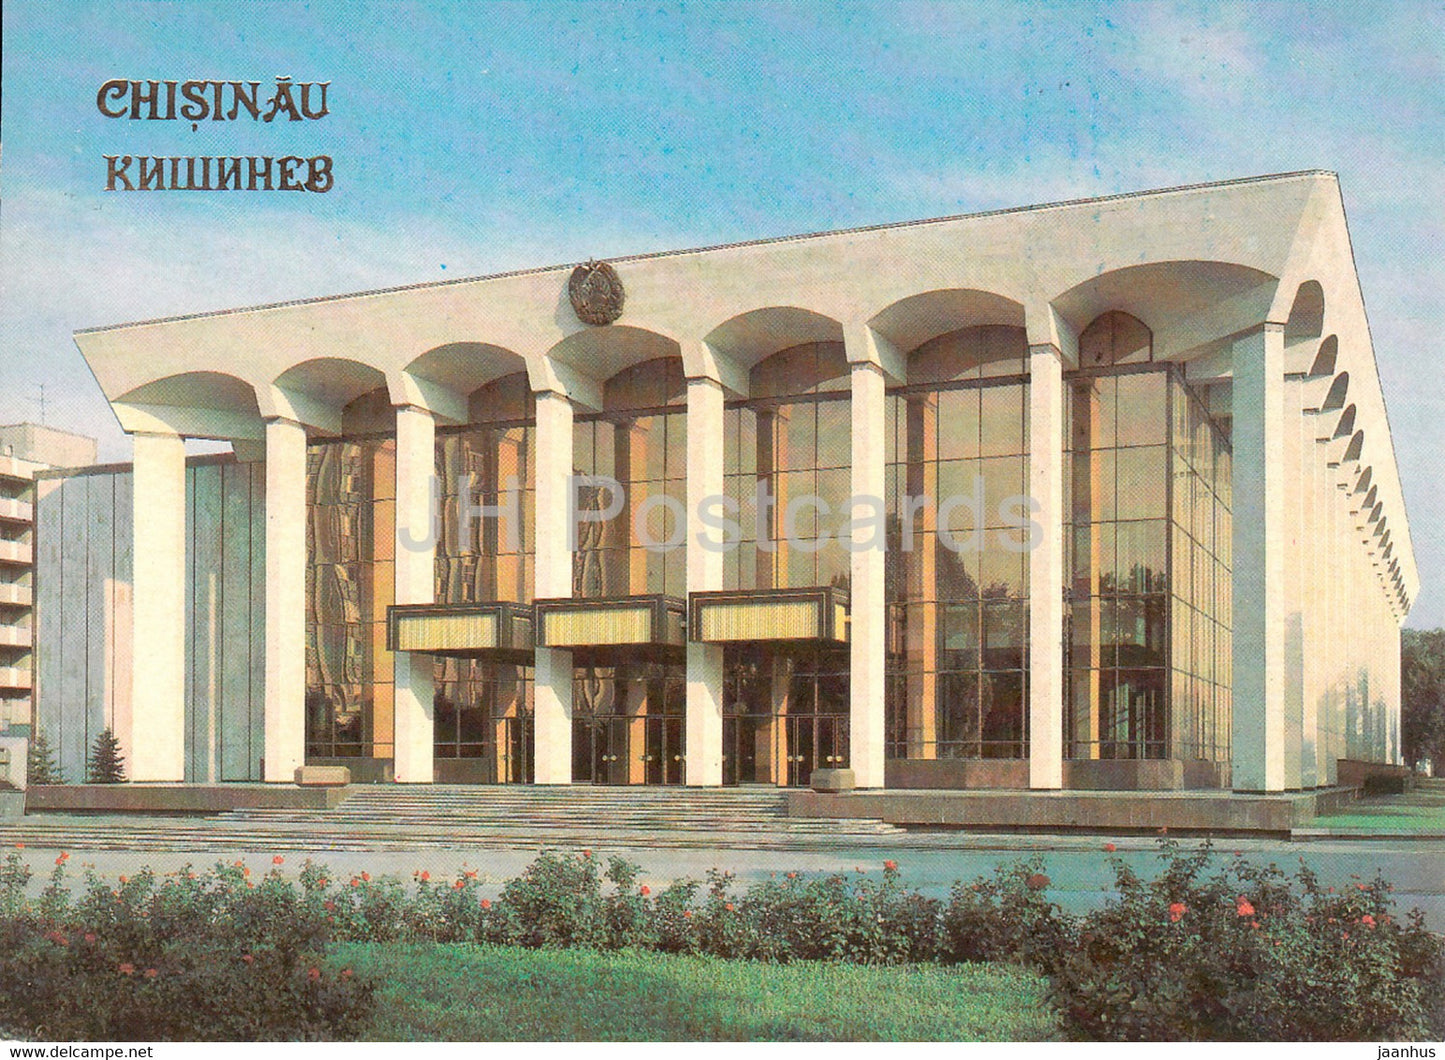 Chisinau - Kishinev - Hall of Friendship - 1989 - Moldova USSR - unused - JH Postcards